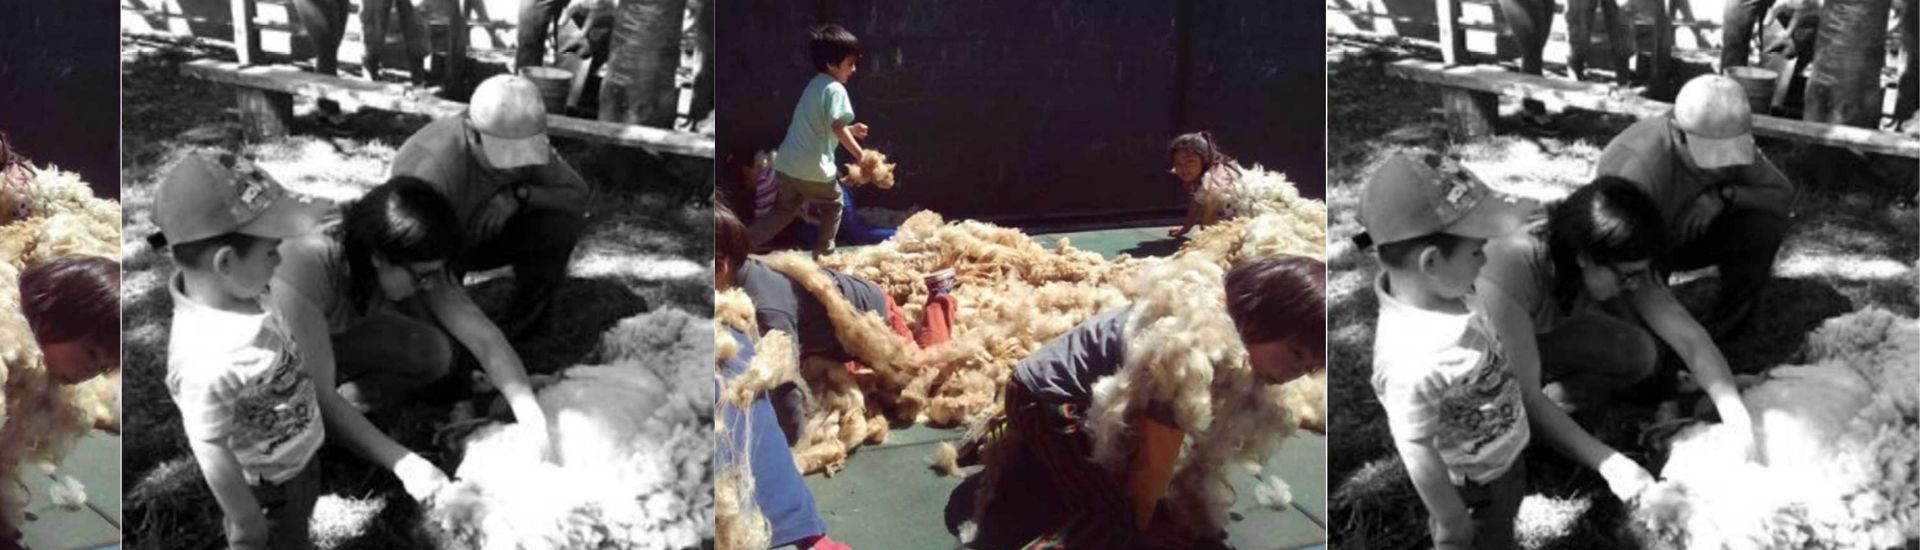 Niños y niñas en proceso de fabricación de lana